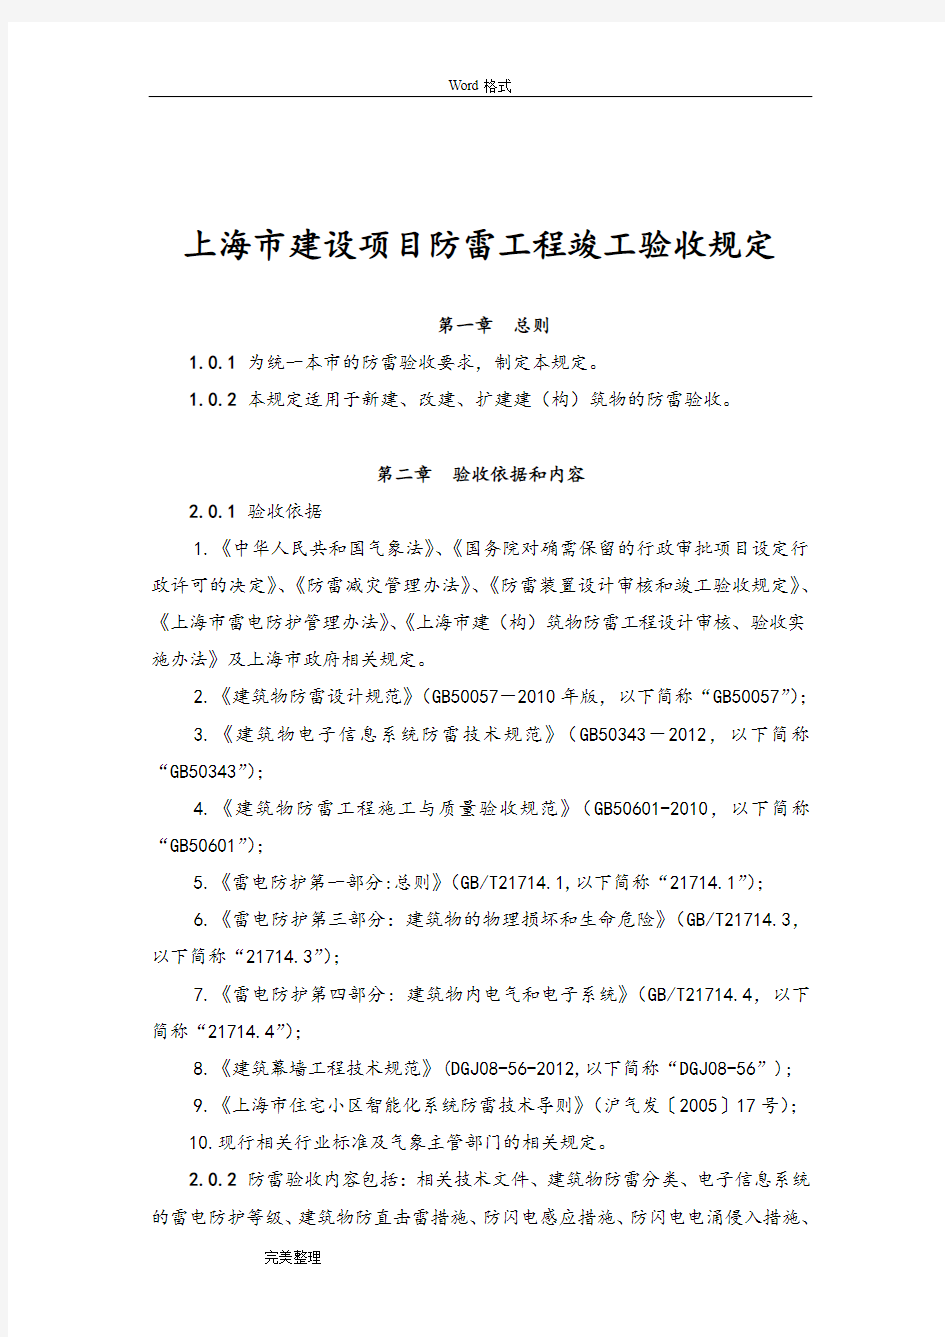 上海建设项目防雷工程竣工验收规定